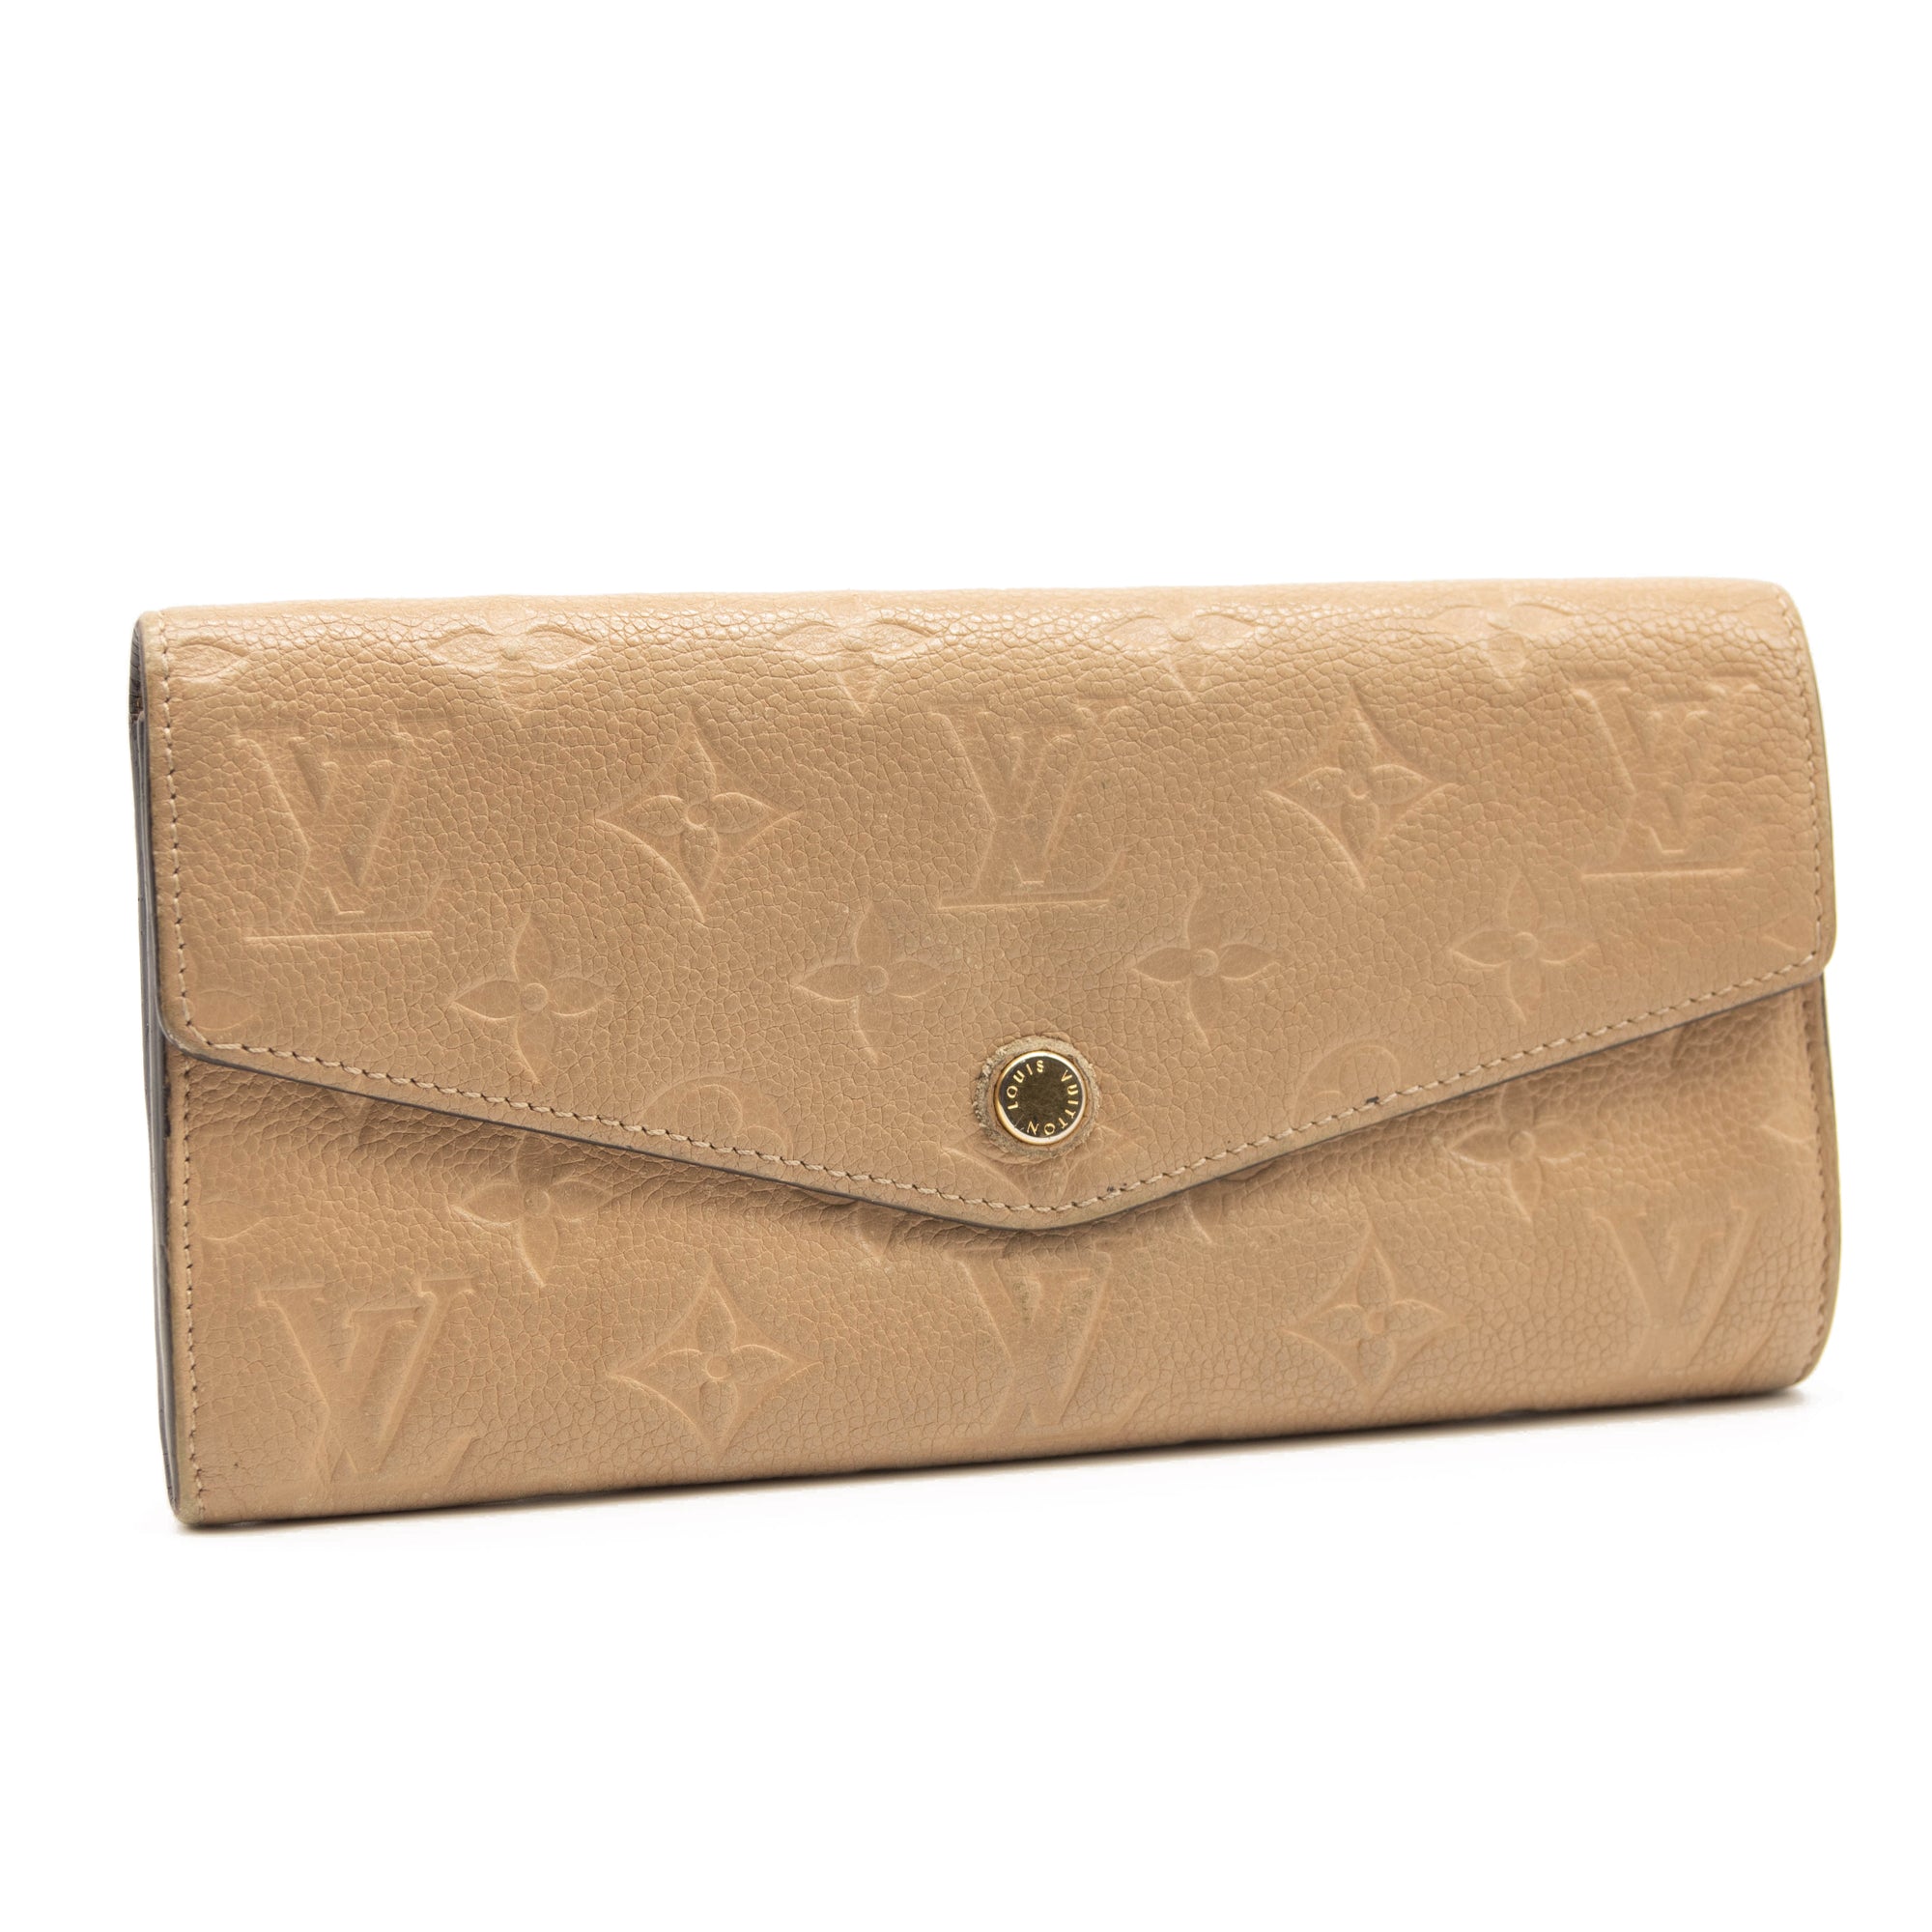 Louis Vuitton Curieuse Monogram Empreinte Leather Snap Wallet on SALE